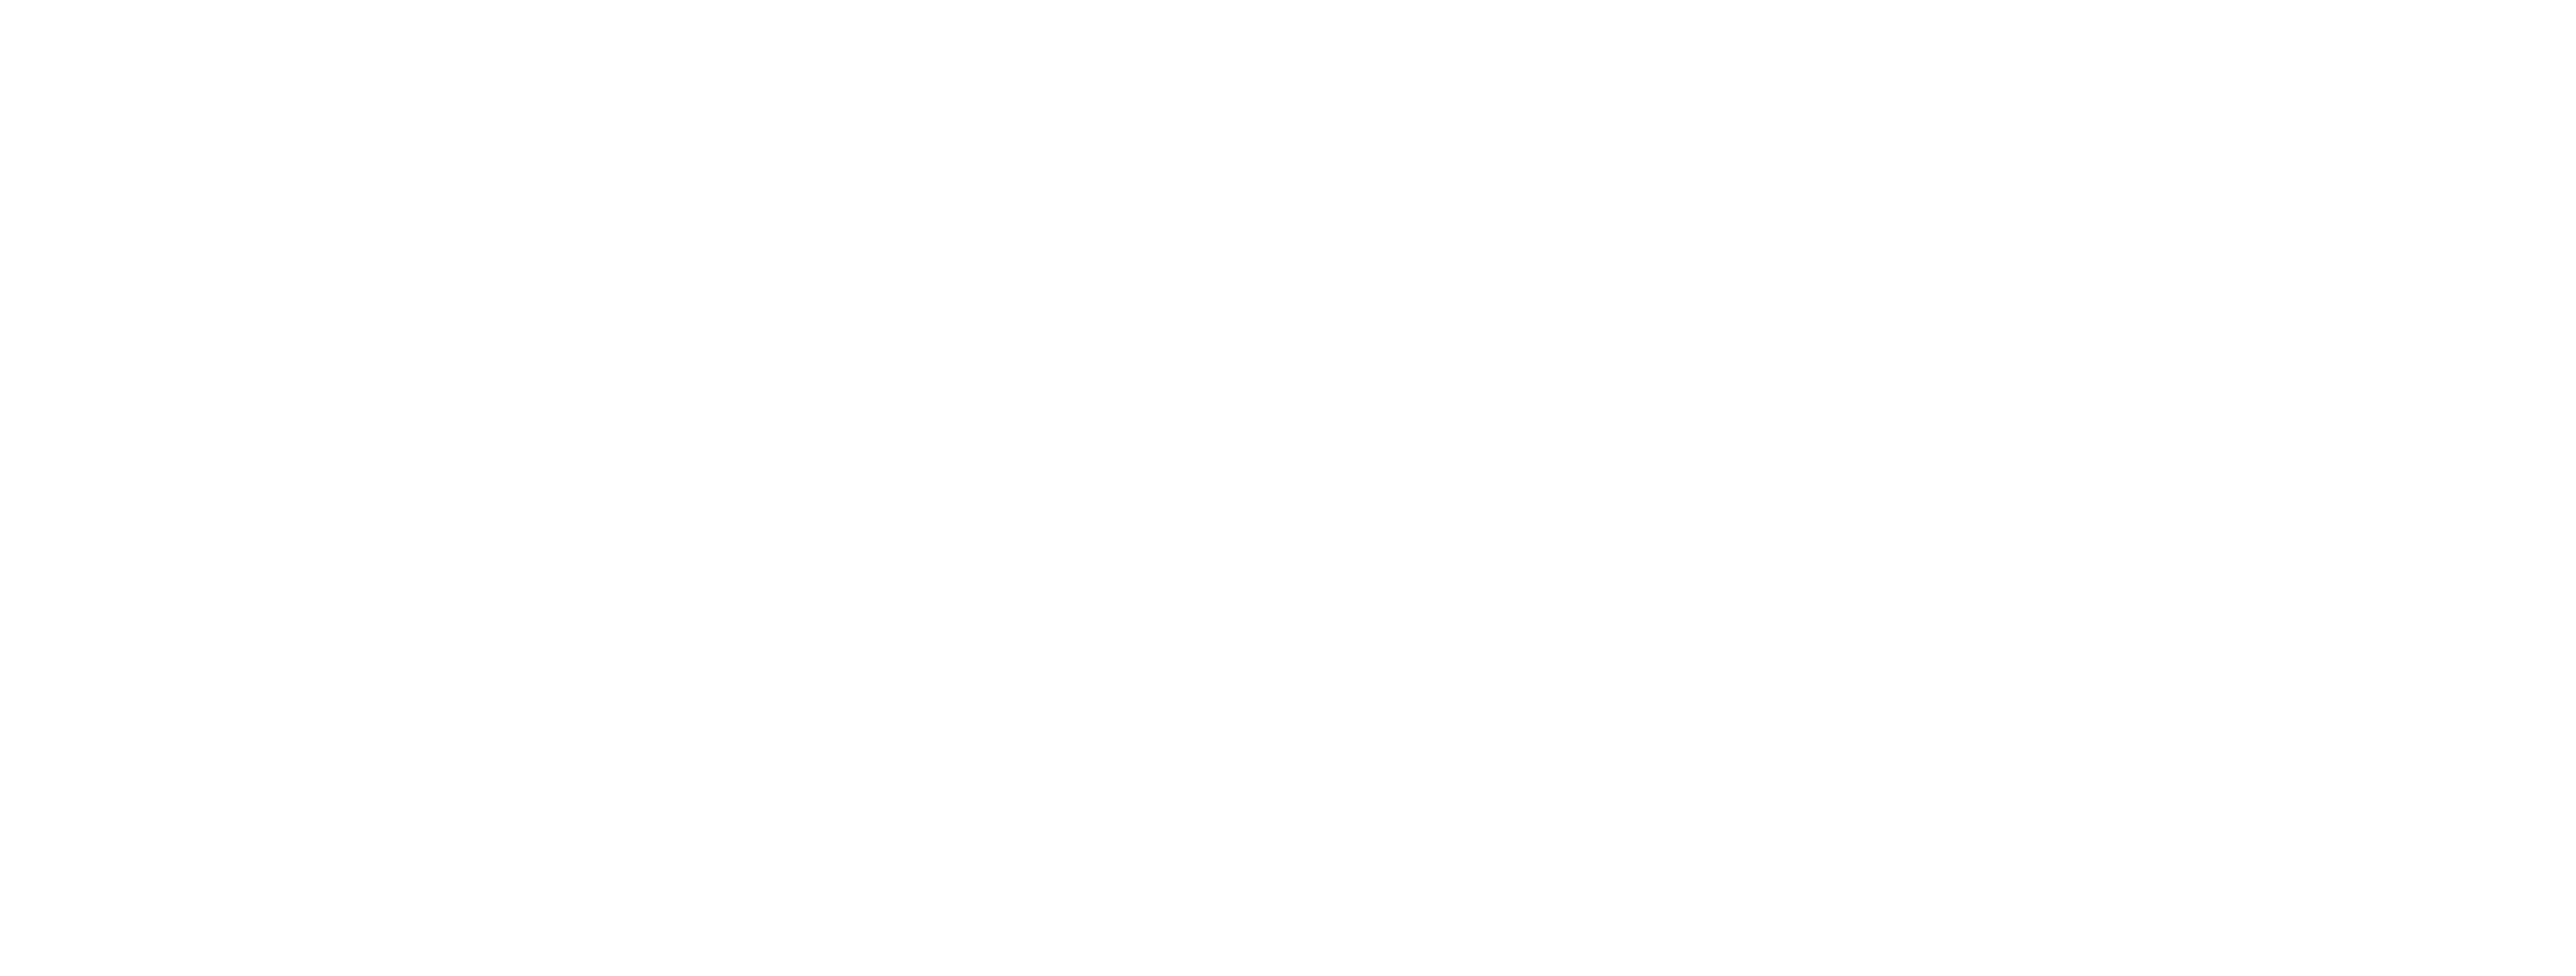 OVG Hospitality